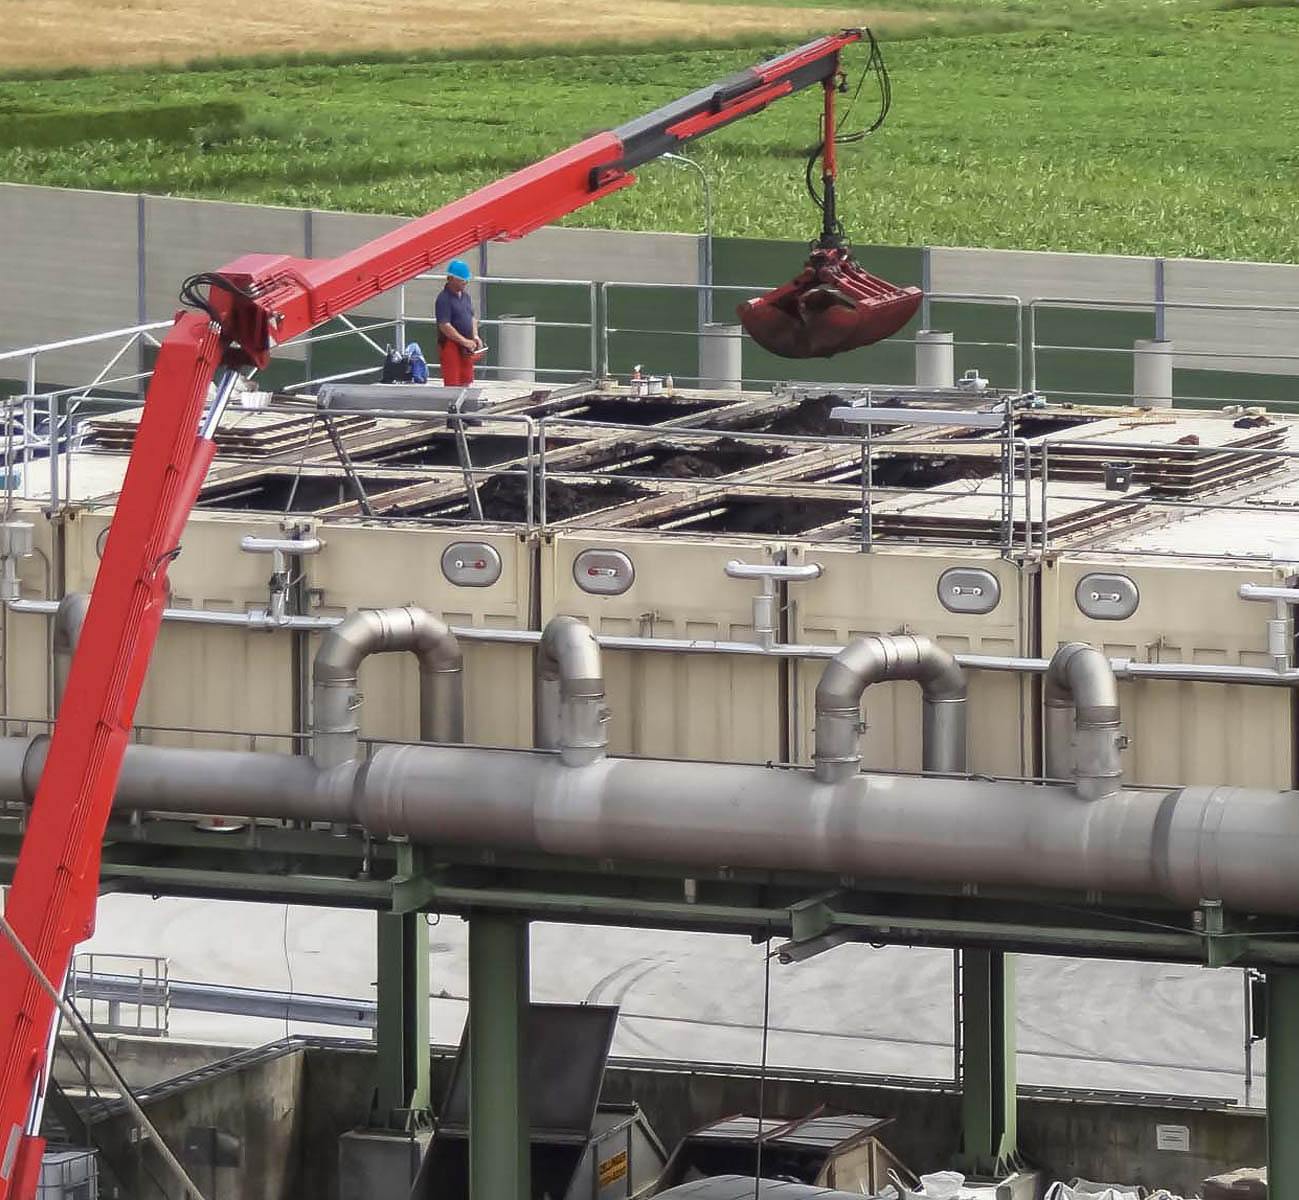 Reemplazo de material de relleno de biofiltros como parte del mantenimiento, planta industrial, Aschach en Alta Austria